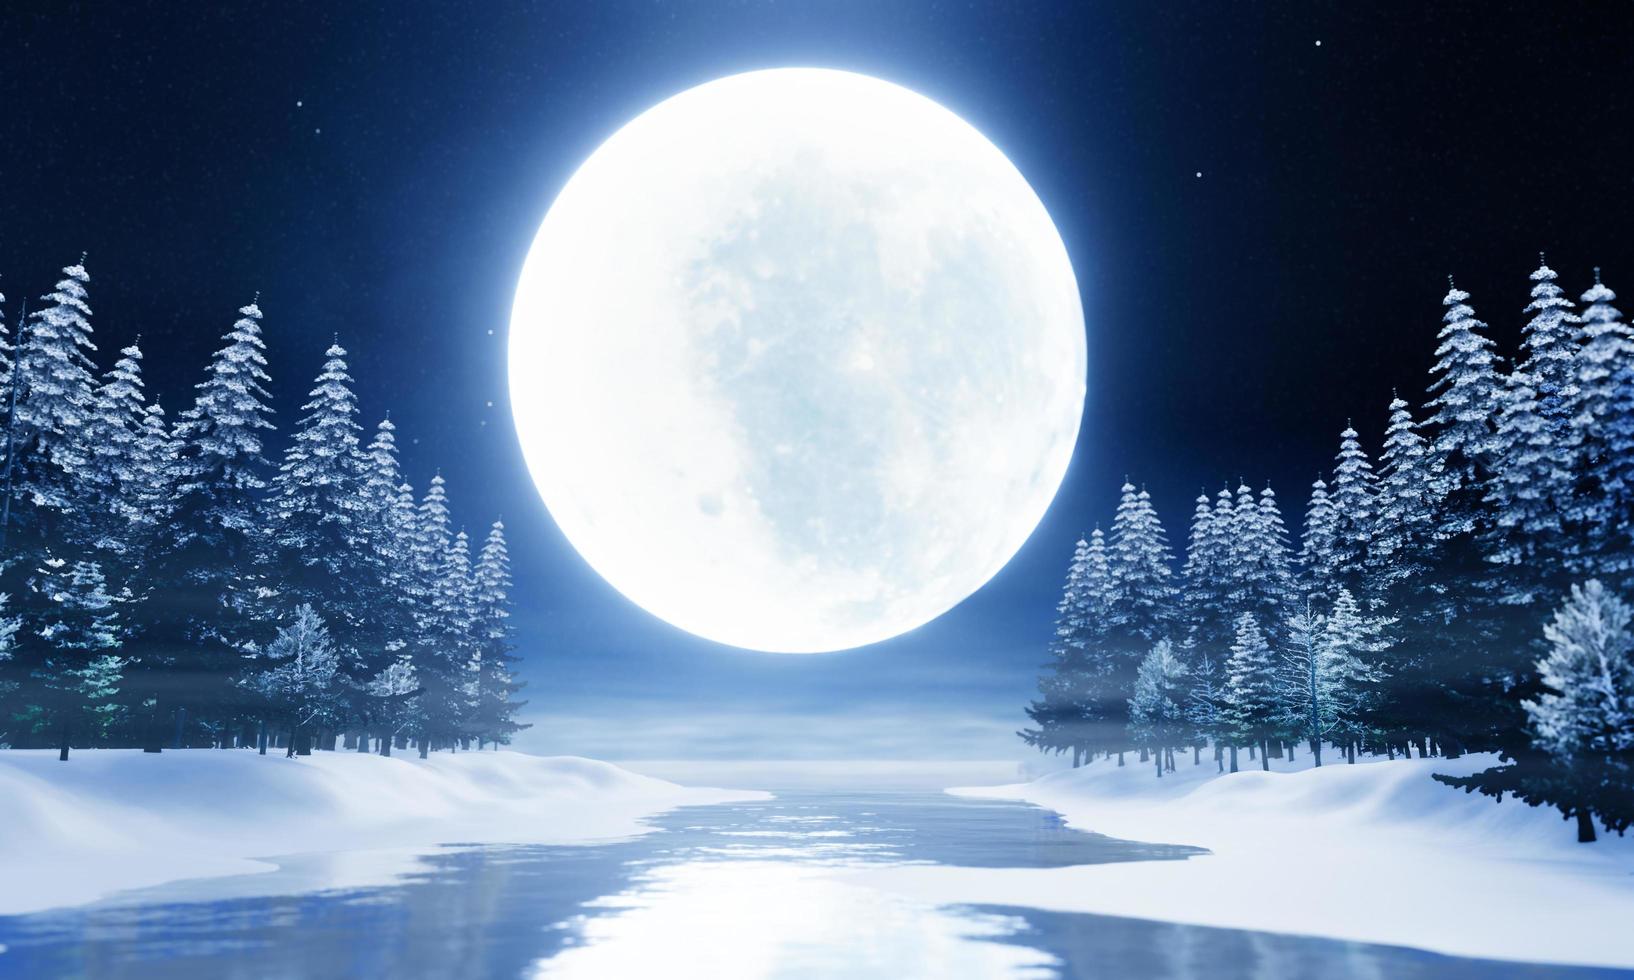 lumière bleue super pleine lune. lac, pinède, sol enneigé, ombre de la lune se reflétant dans l'eau. image nature fantastique de la nuit montante. il y a un peu de brouillard. rendu 3d photo